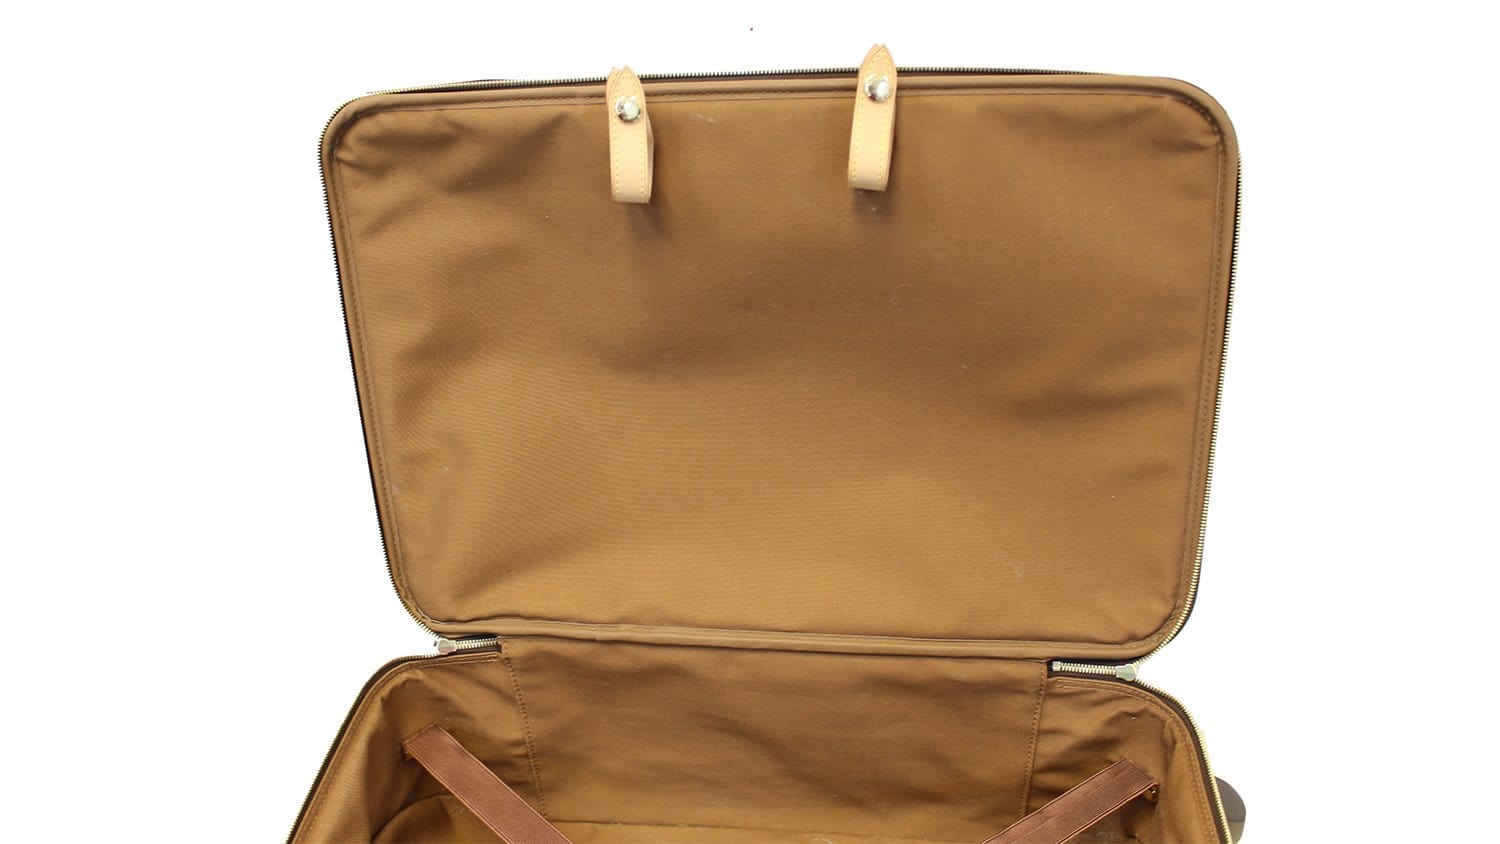 Louis Vuitton Monogram Pegase 55 M23294 Bag Carry Bag Free Shipping [Used]